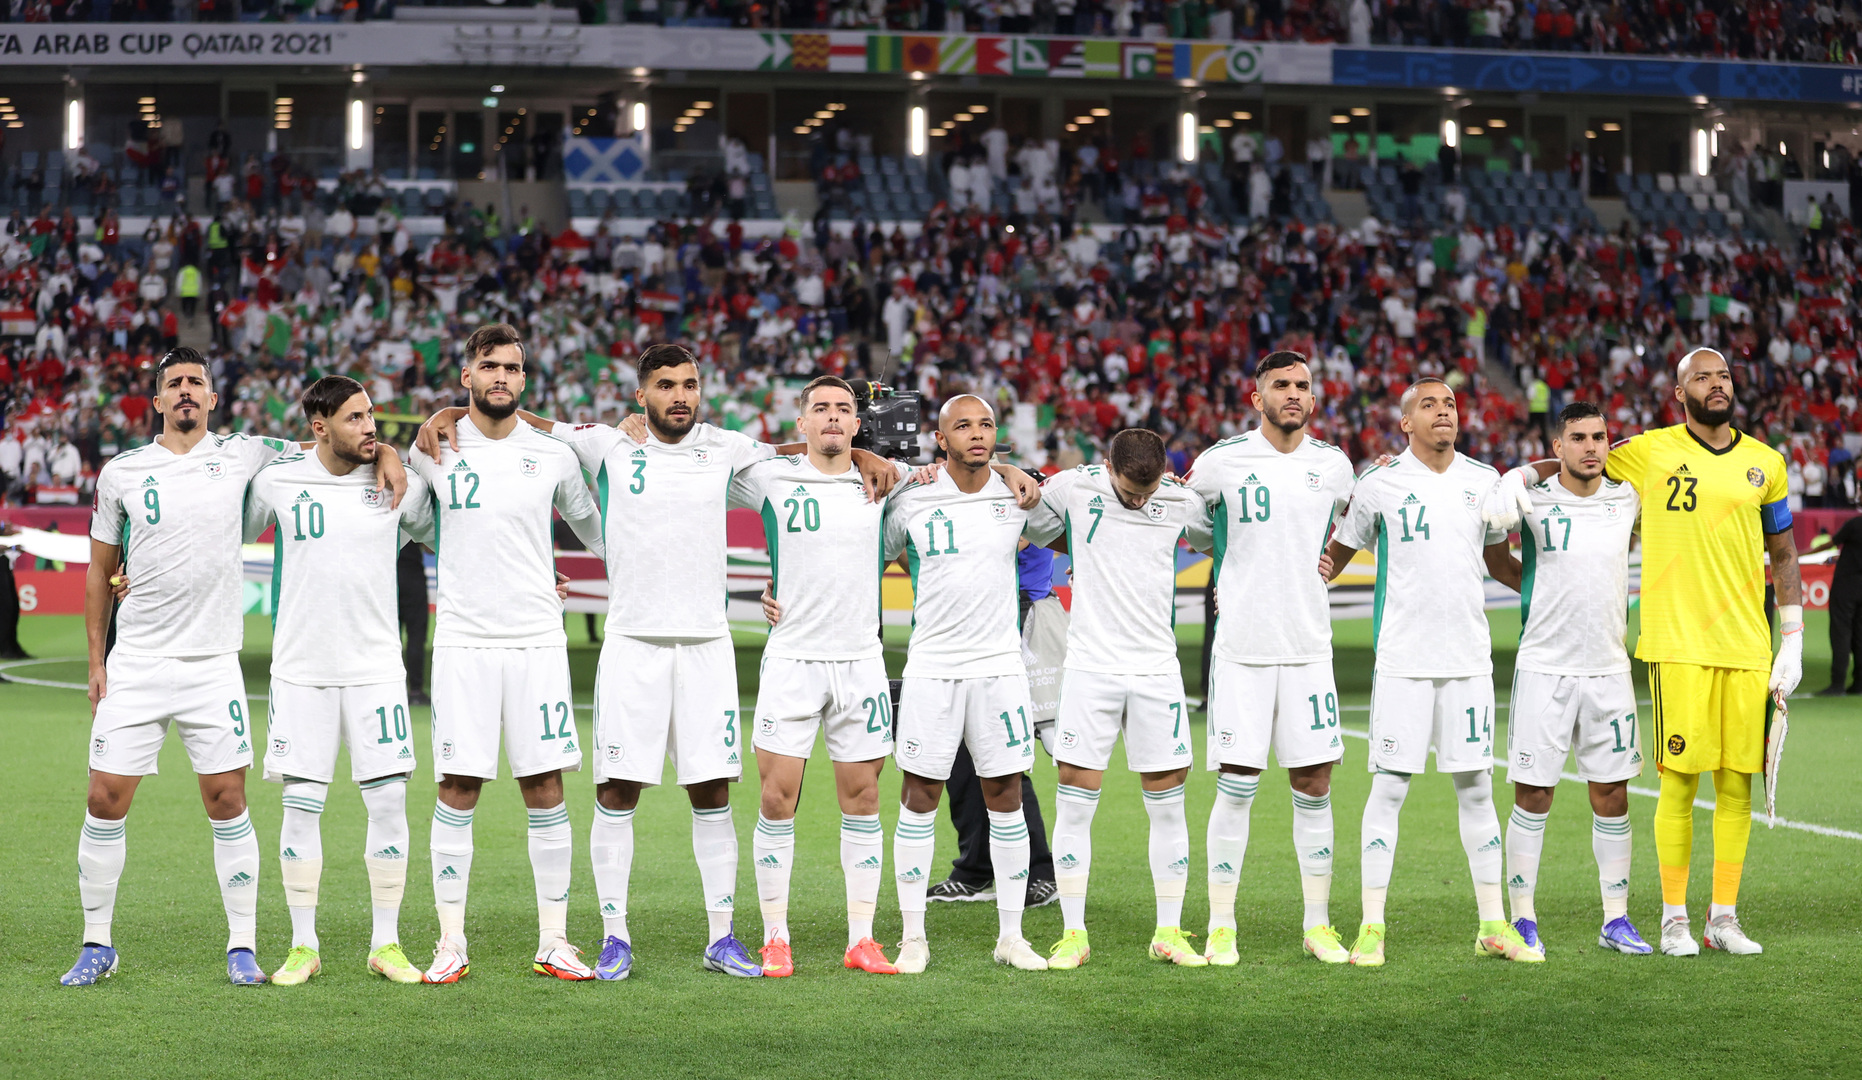 محرز يوجه رسالة للاعبي الجزائر قبل مواجهة المغرب